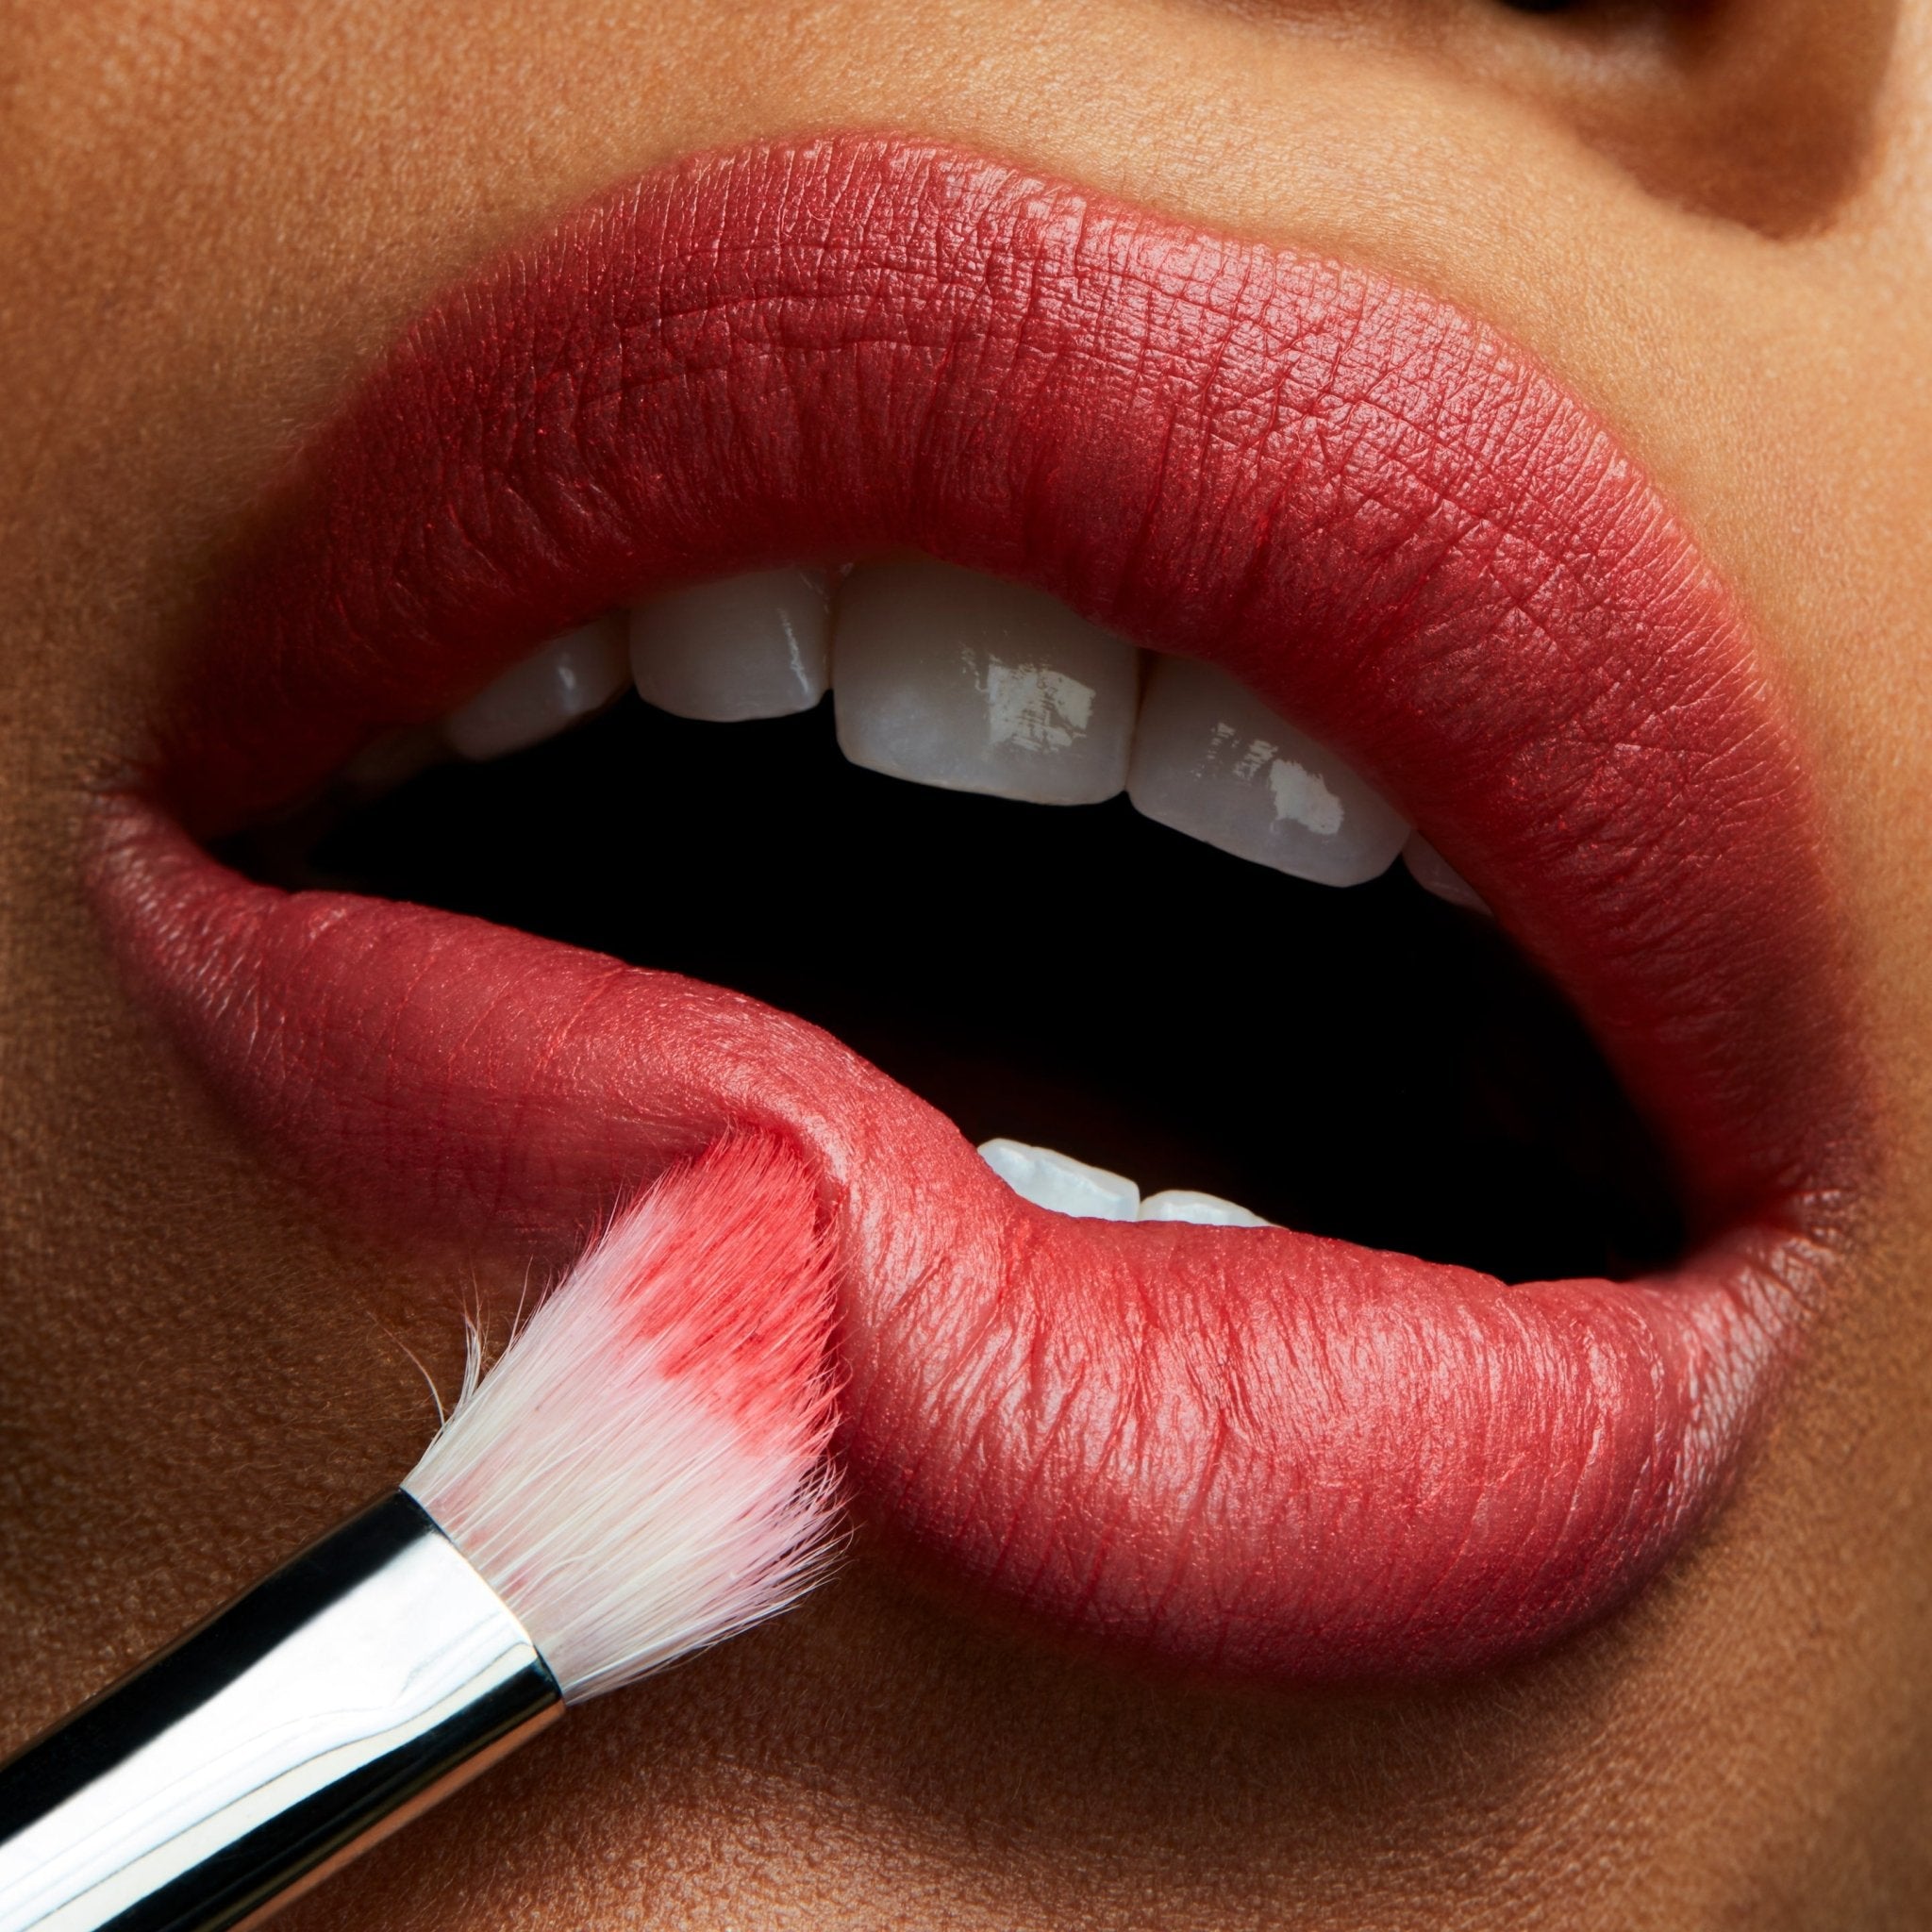 Mac Powder Kiss Lipstick - AllurebeautypkMac Powder Kiss Lipstick